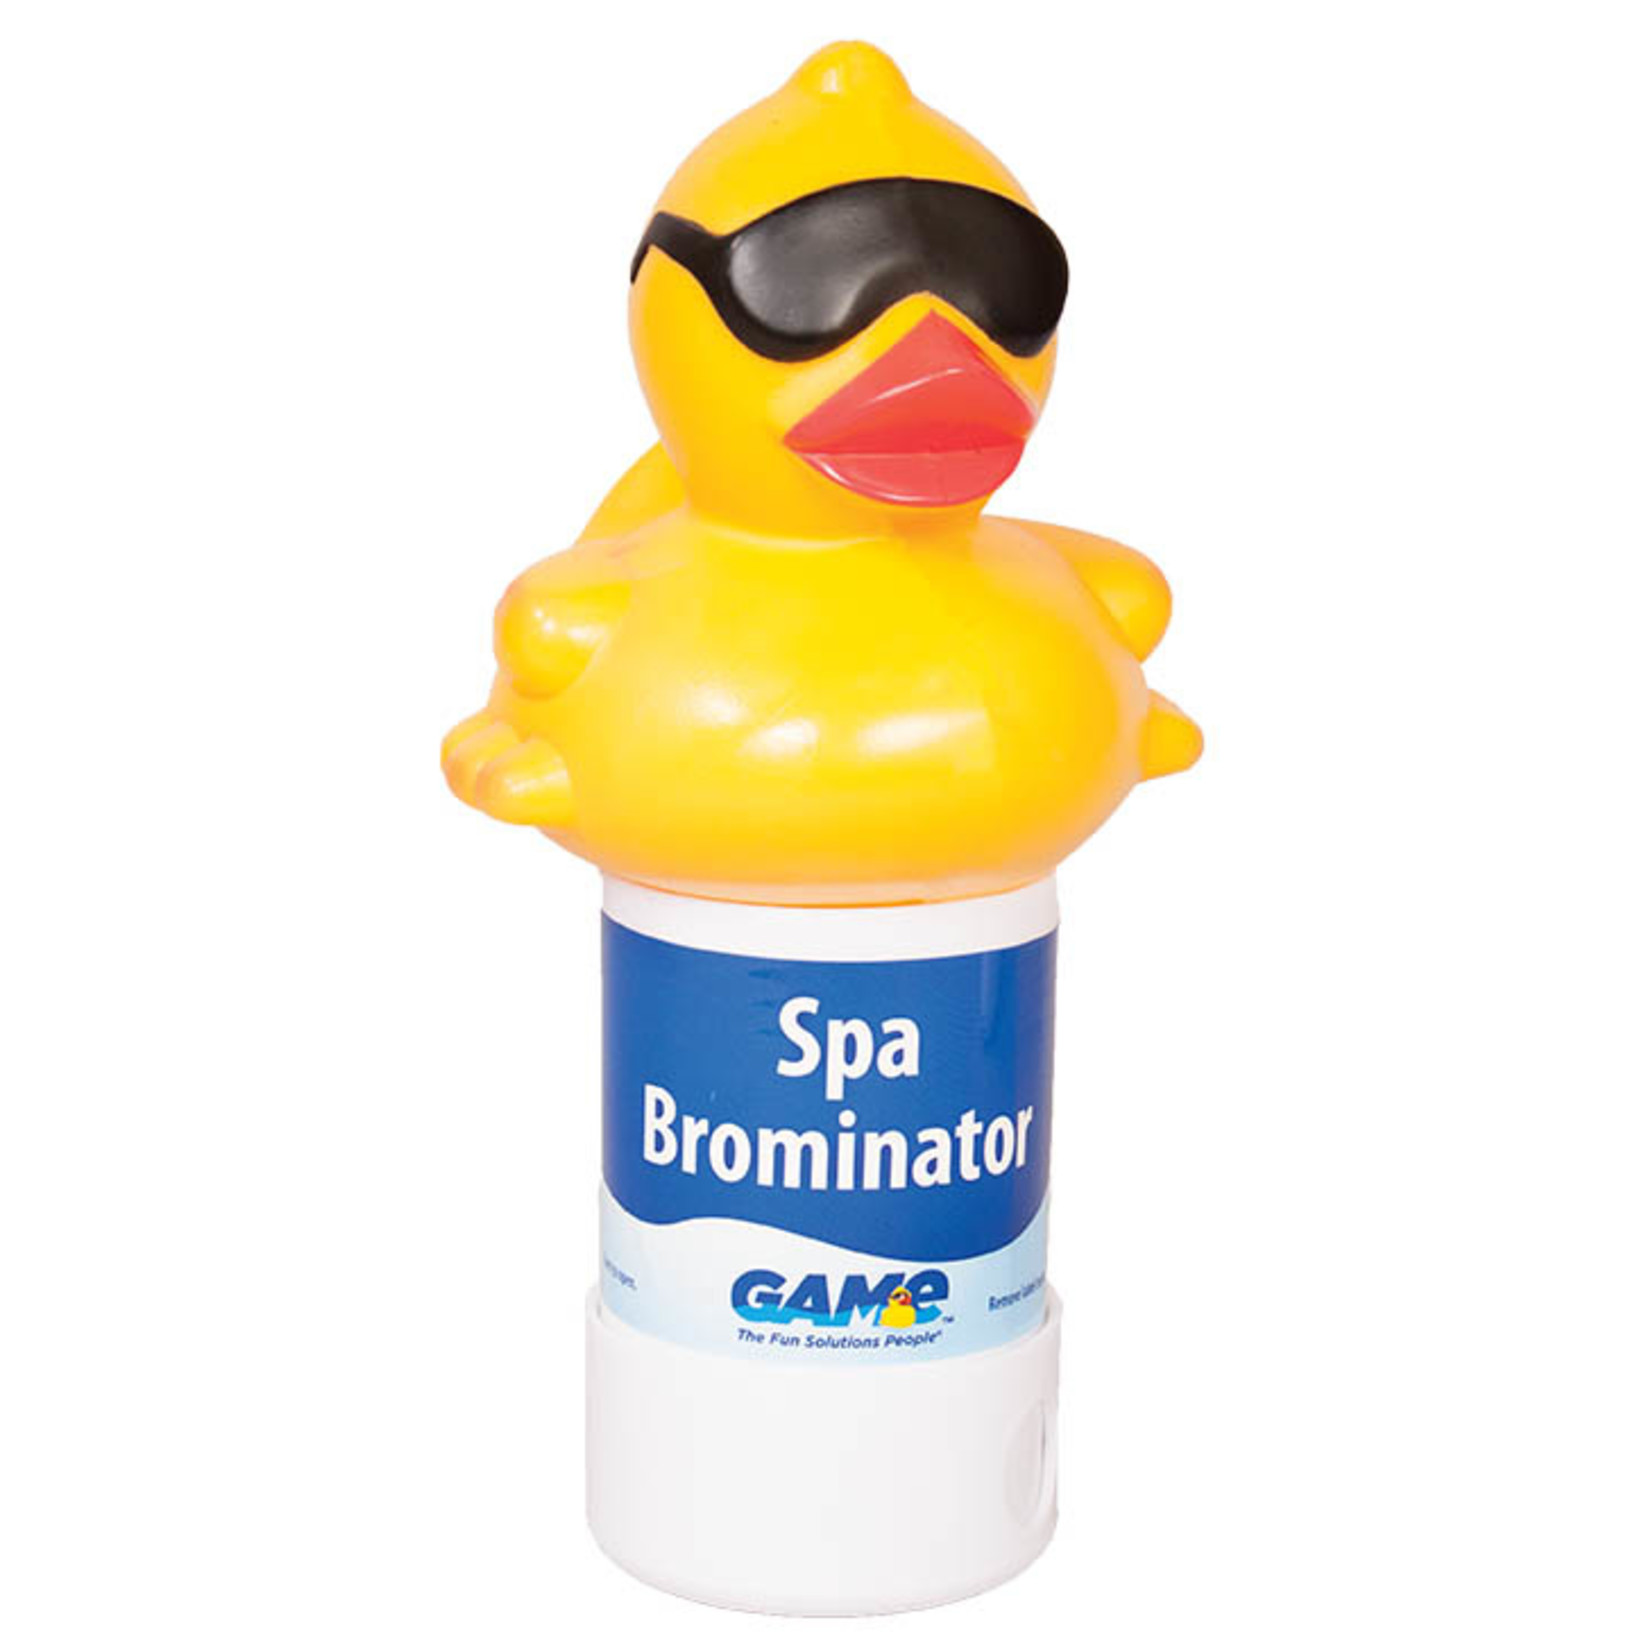 GAME Derby Duck Spa Dispenser